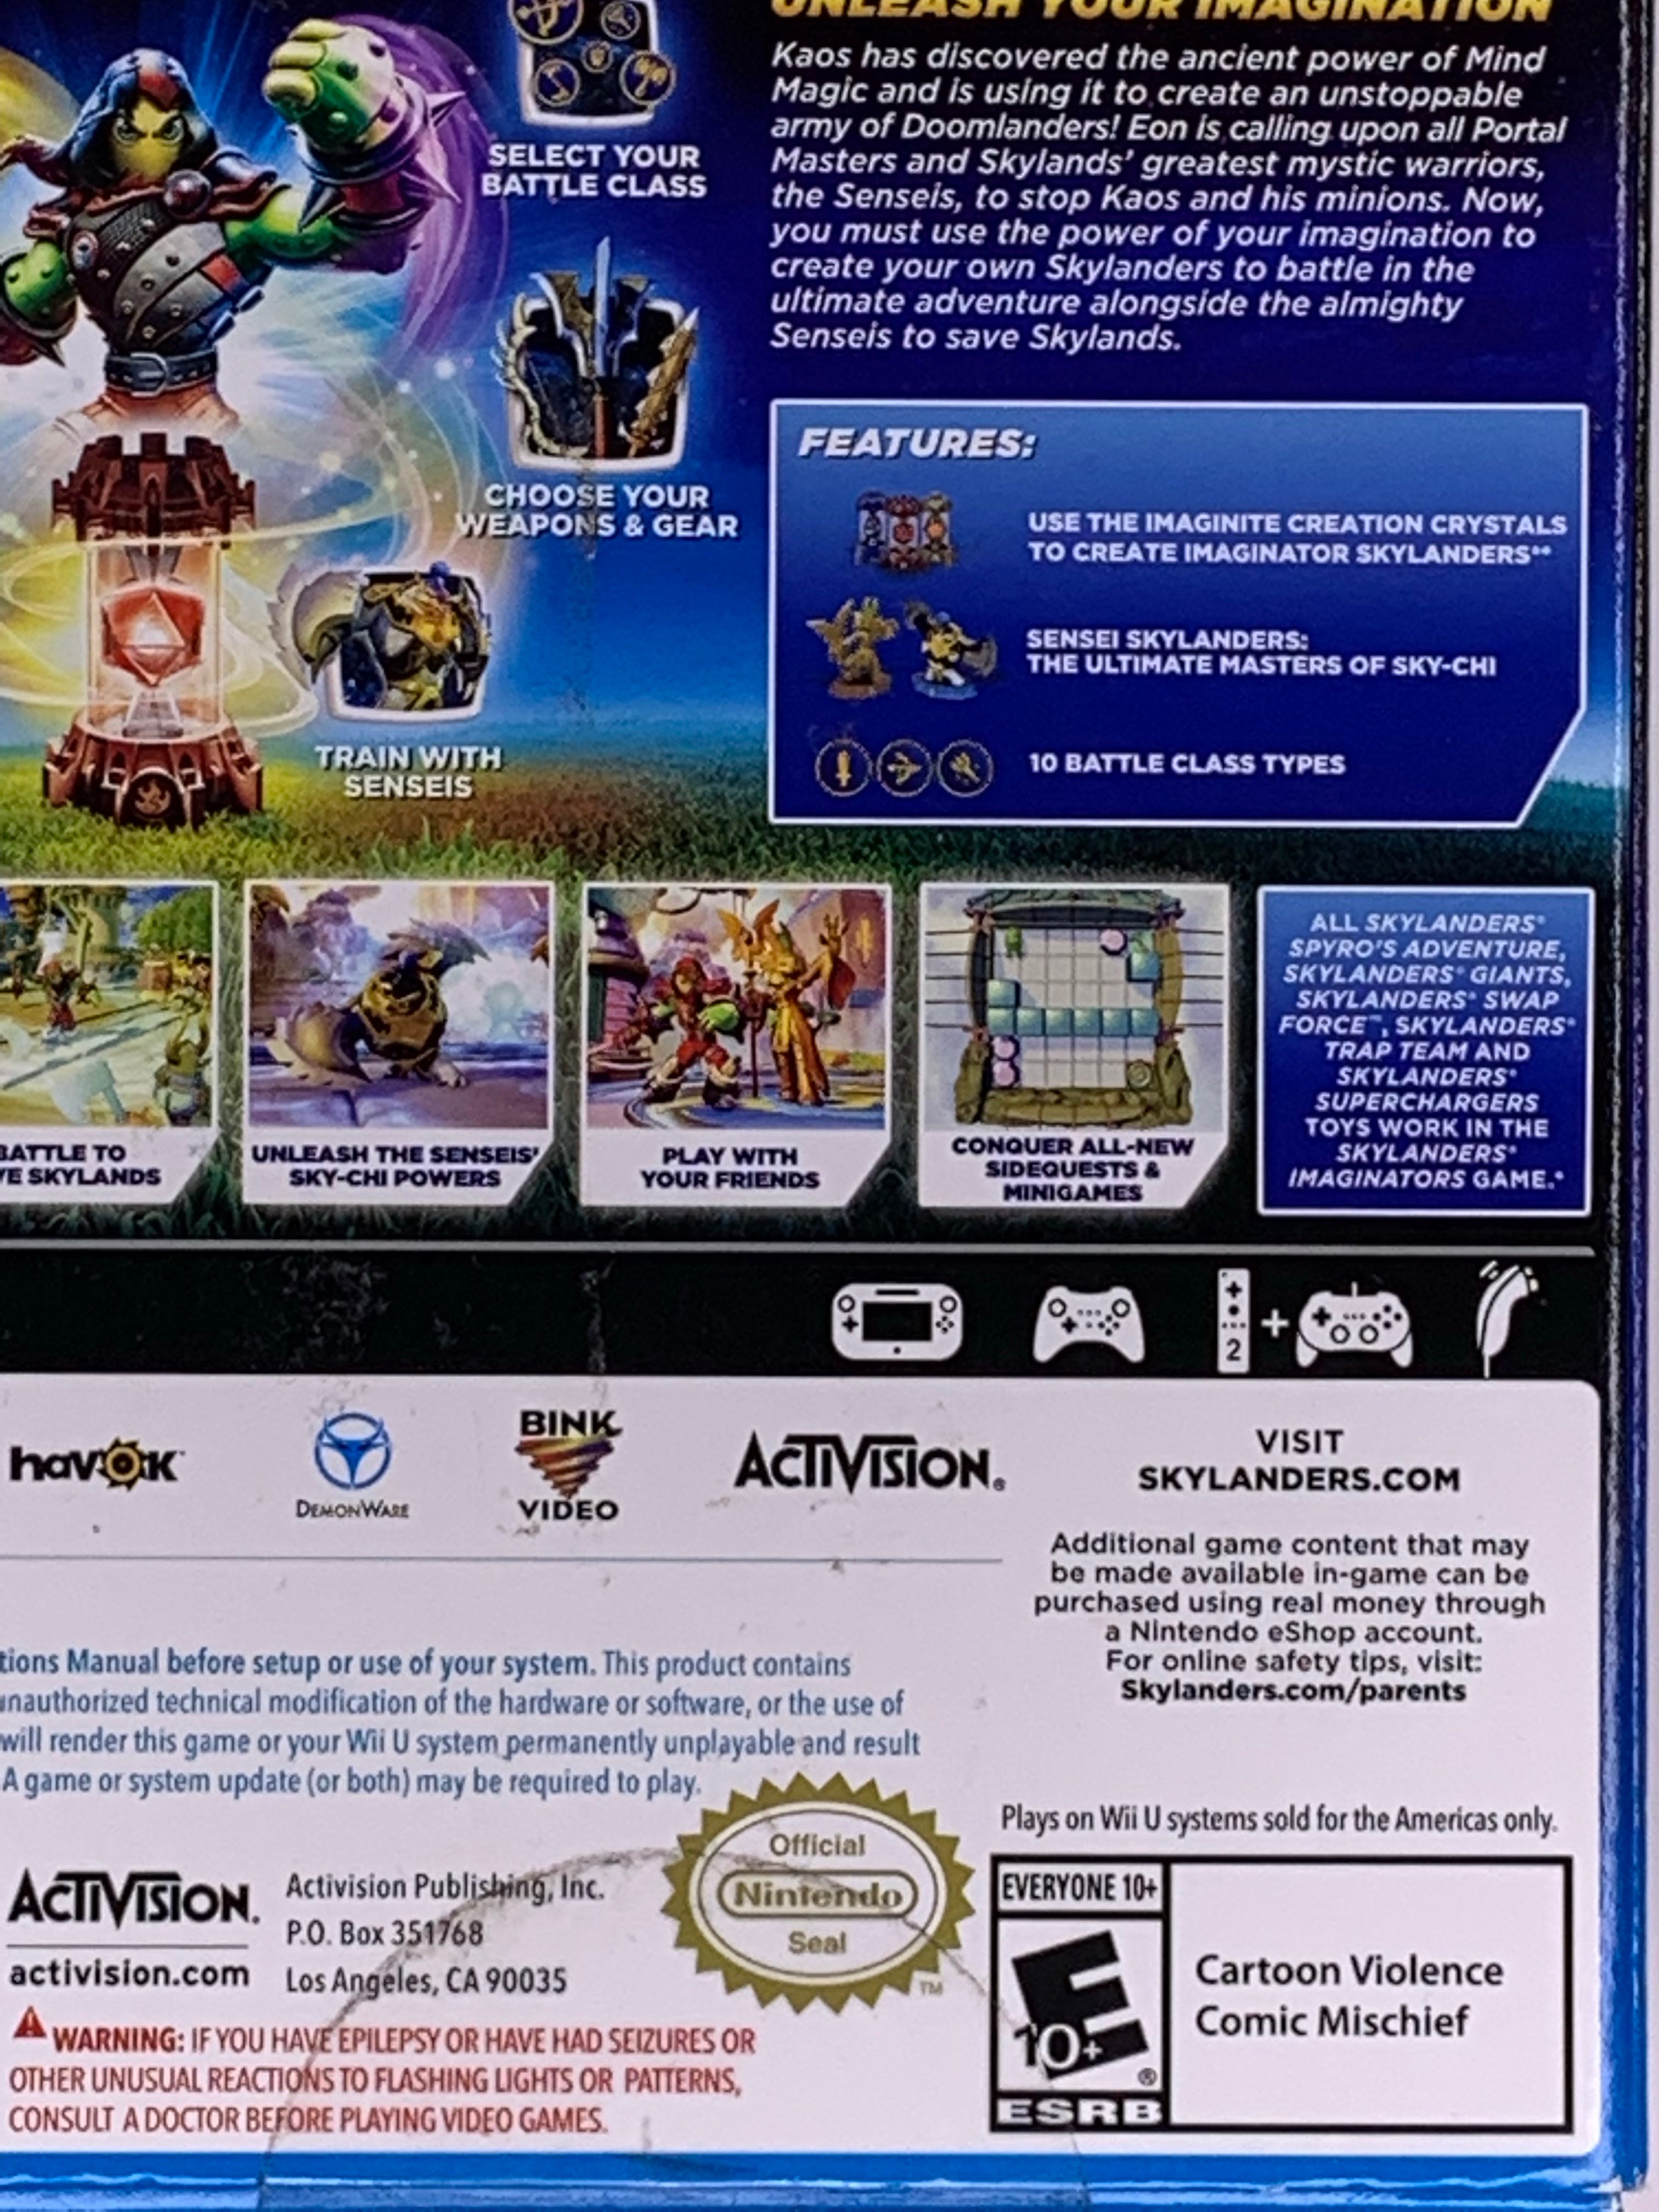 SkyLanders Imaginators Wii U Portal Owners Pack Create Your Own Video Games